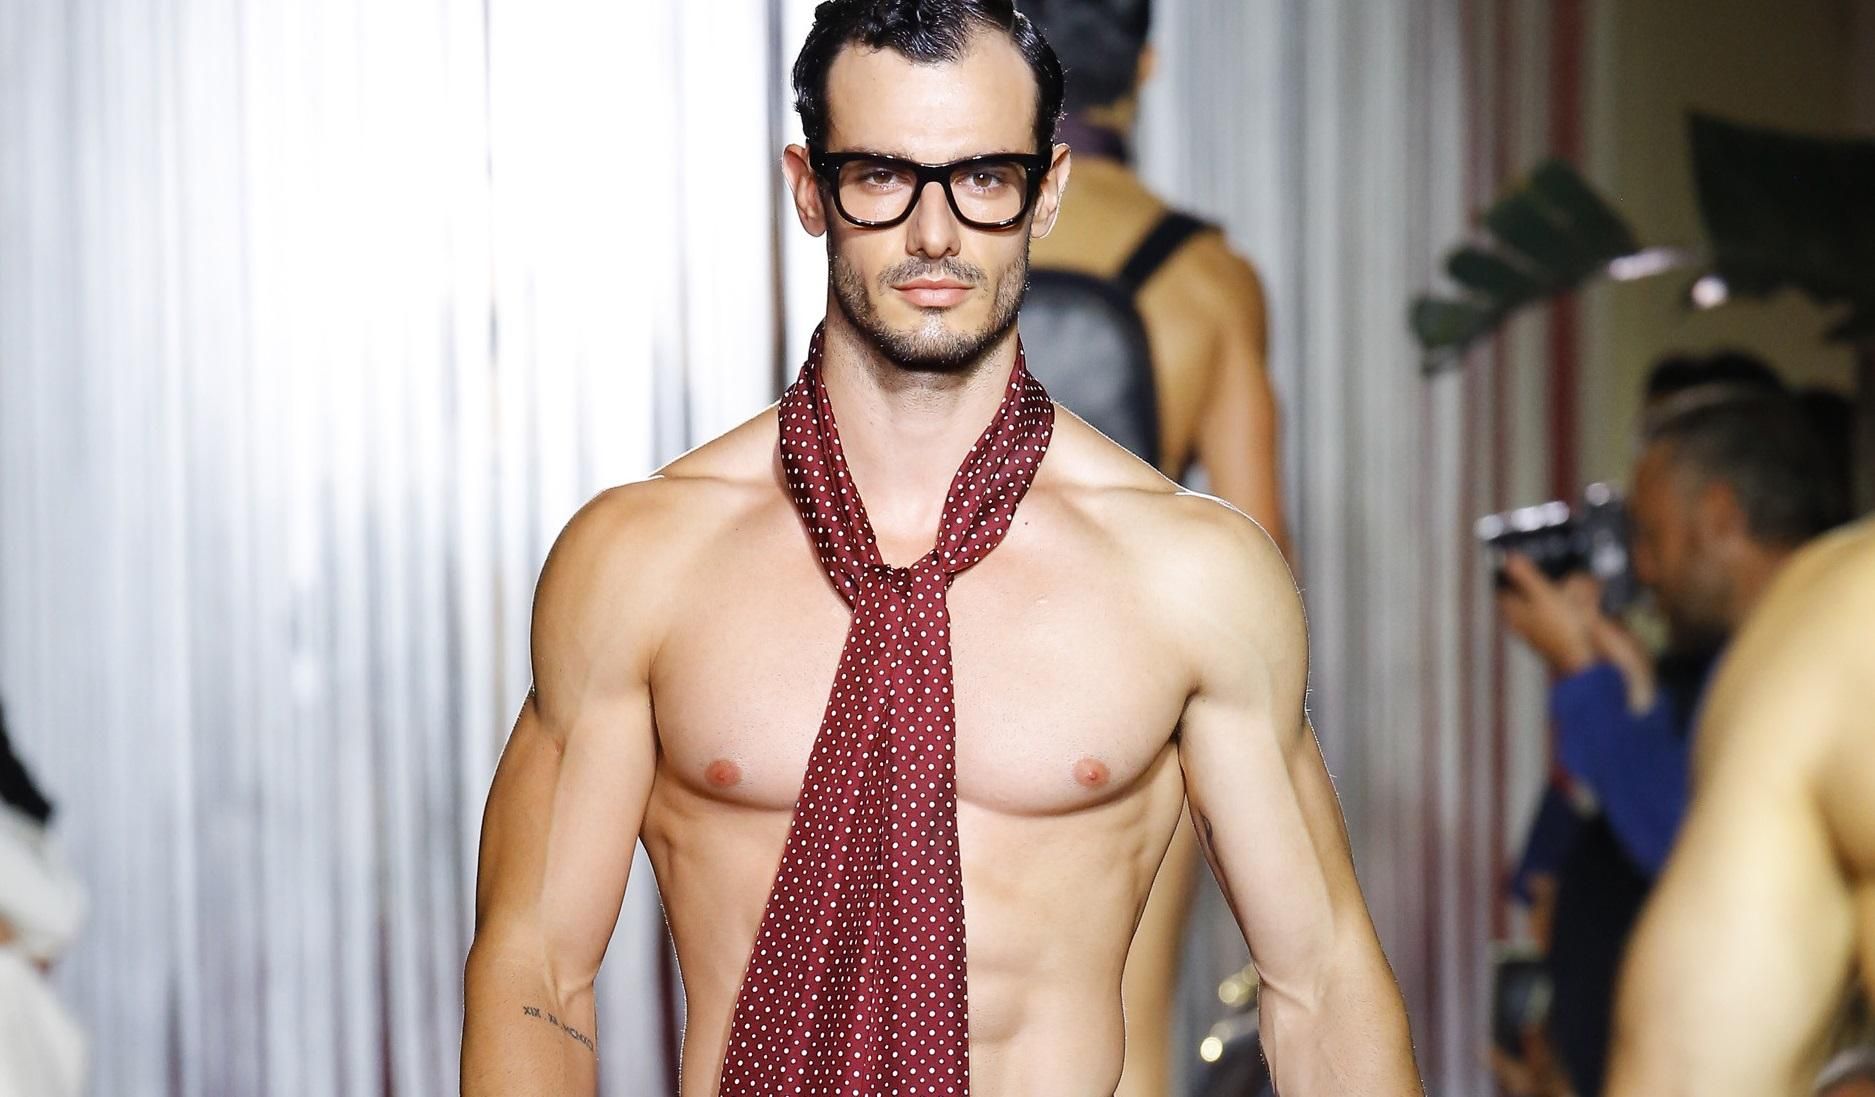 Соблазнительные мужчины прошлись в белье и аксессуарах на показе Dolce & Gabbana: фото